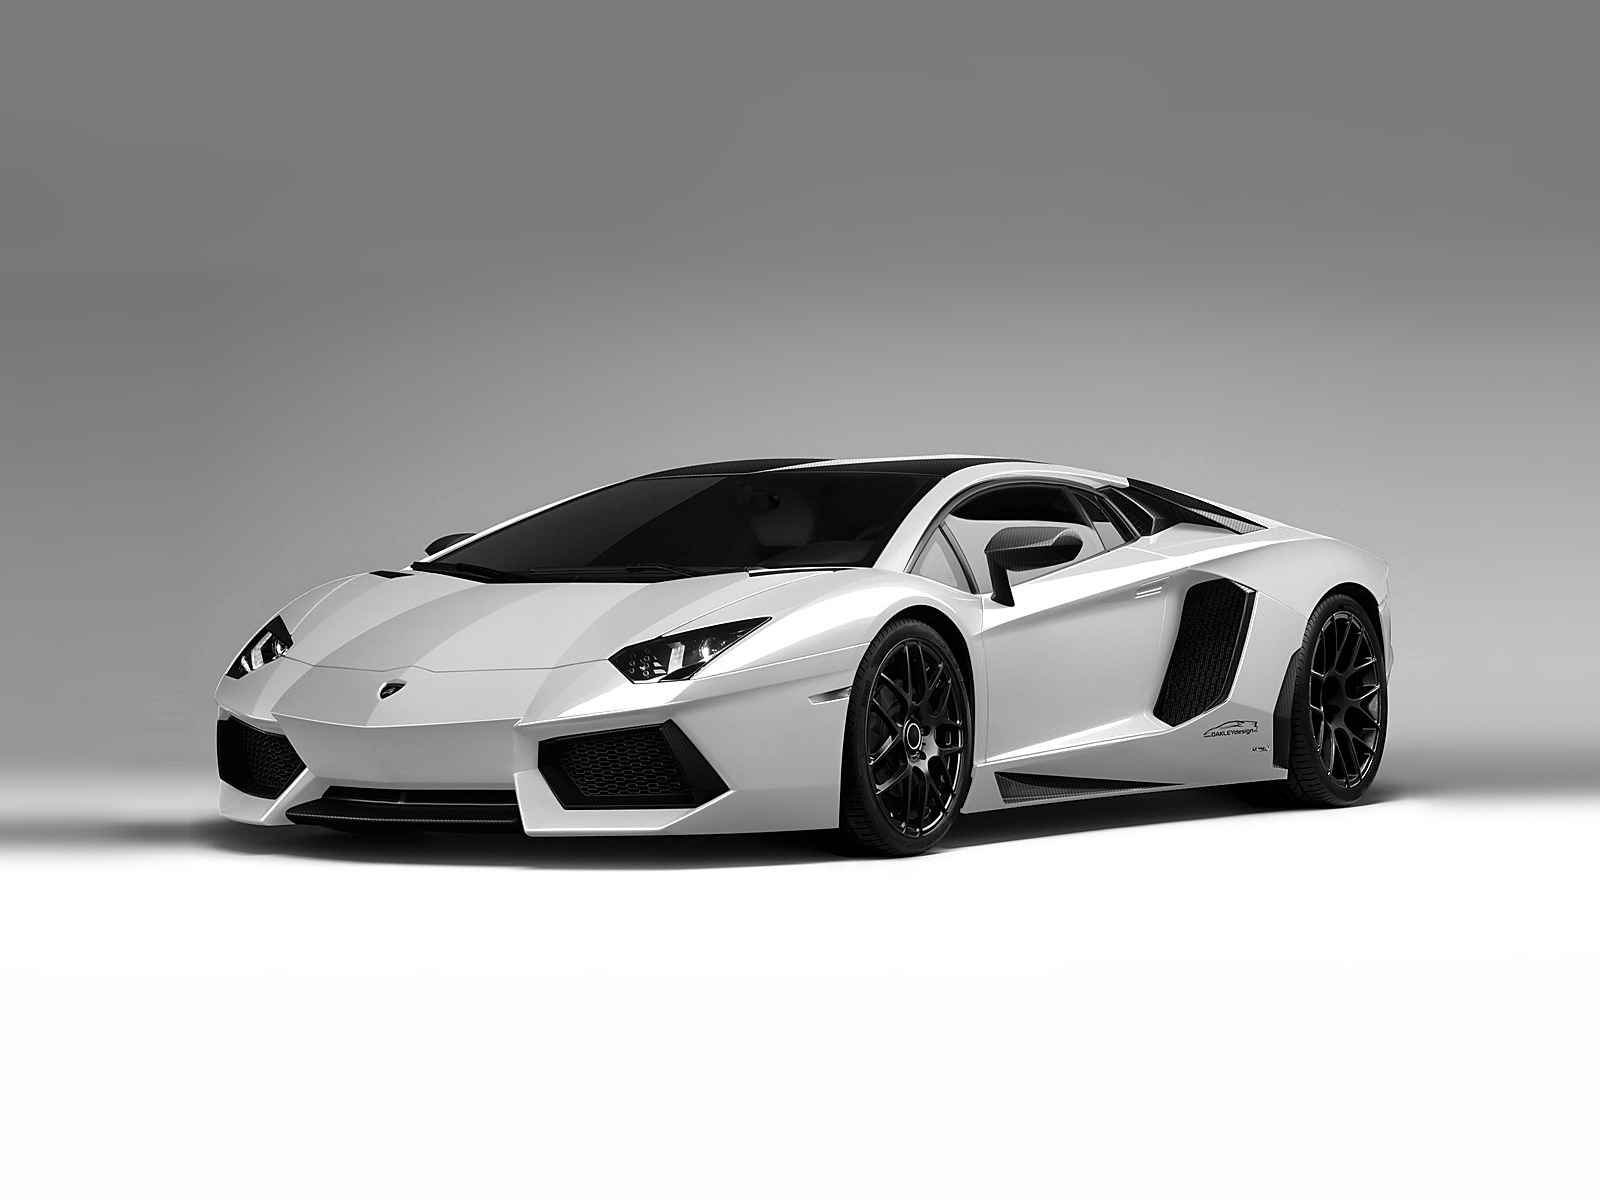 Lamborghini Aventador White for 1600 x 1200 resolution